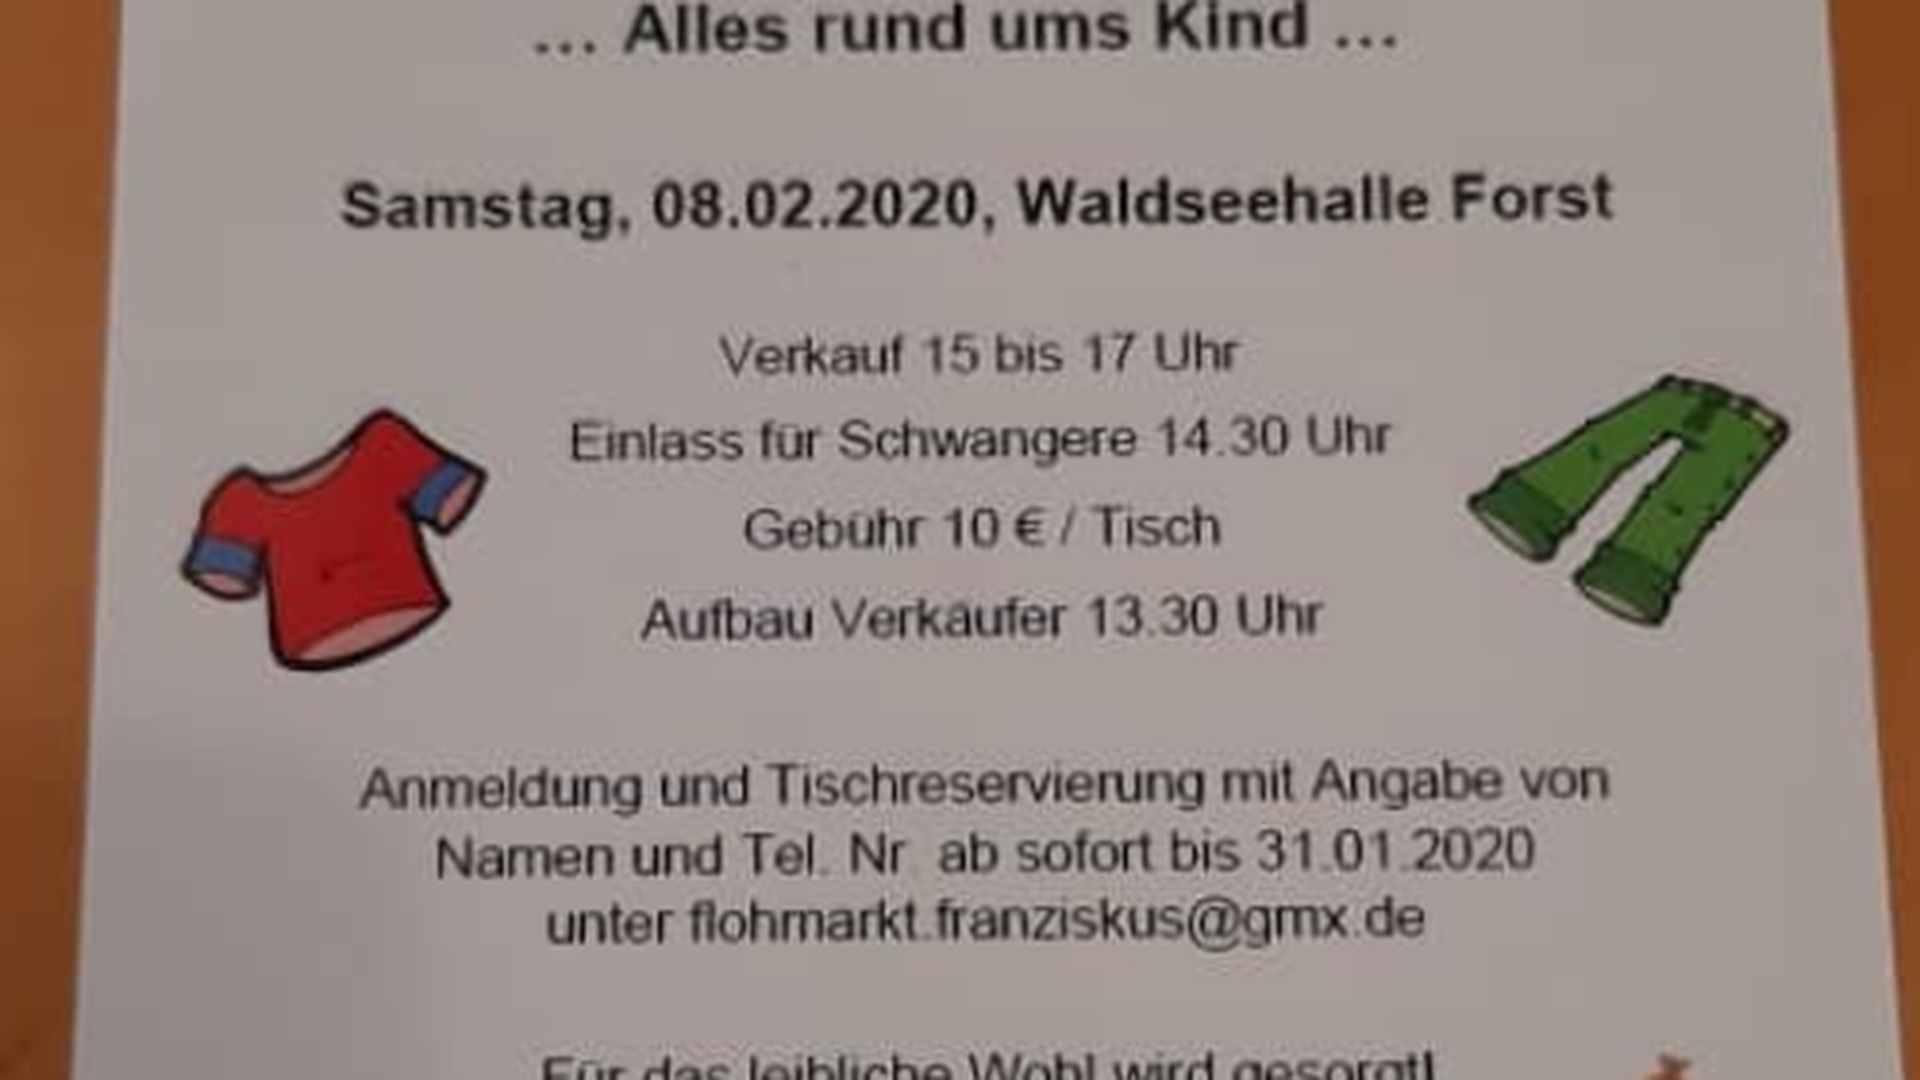 Der Kindergarten St. Franziskus in Bruchsal wird im Februar 2020 einen Kinder-Flohmarkt veranstalten.